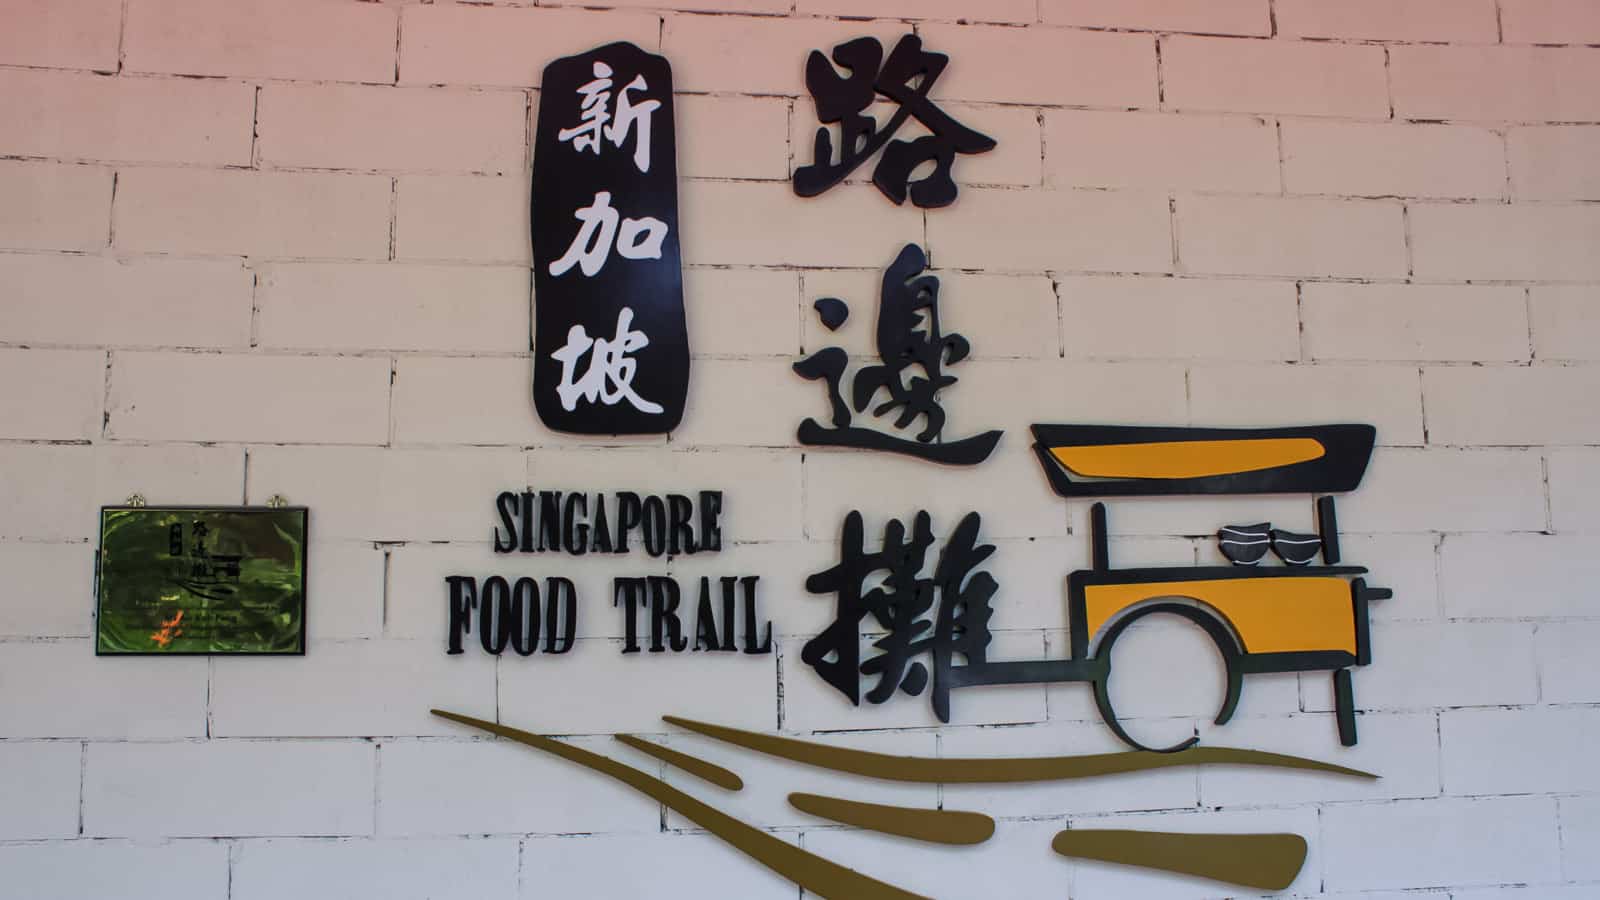 新加坡美食之旅:去哪里吃新加坡飞轮